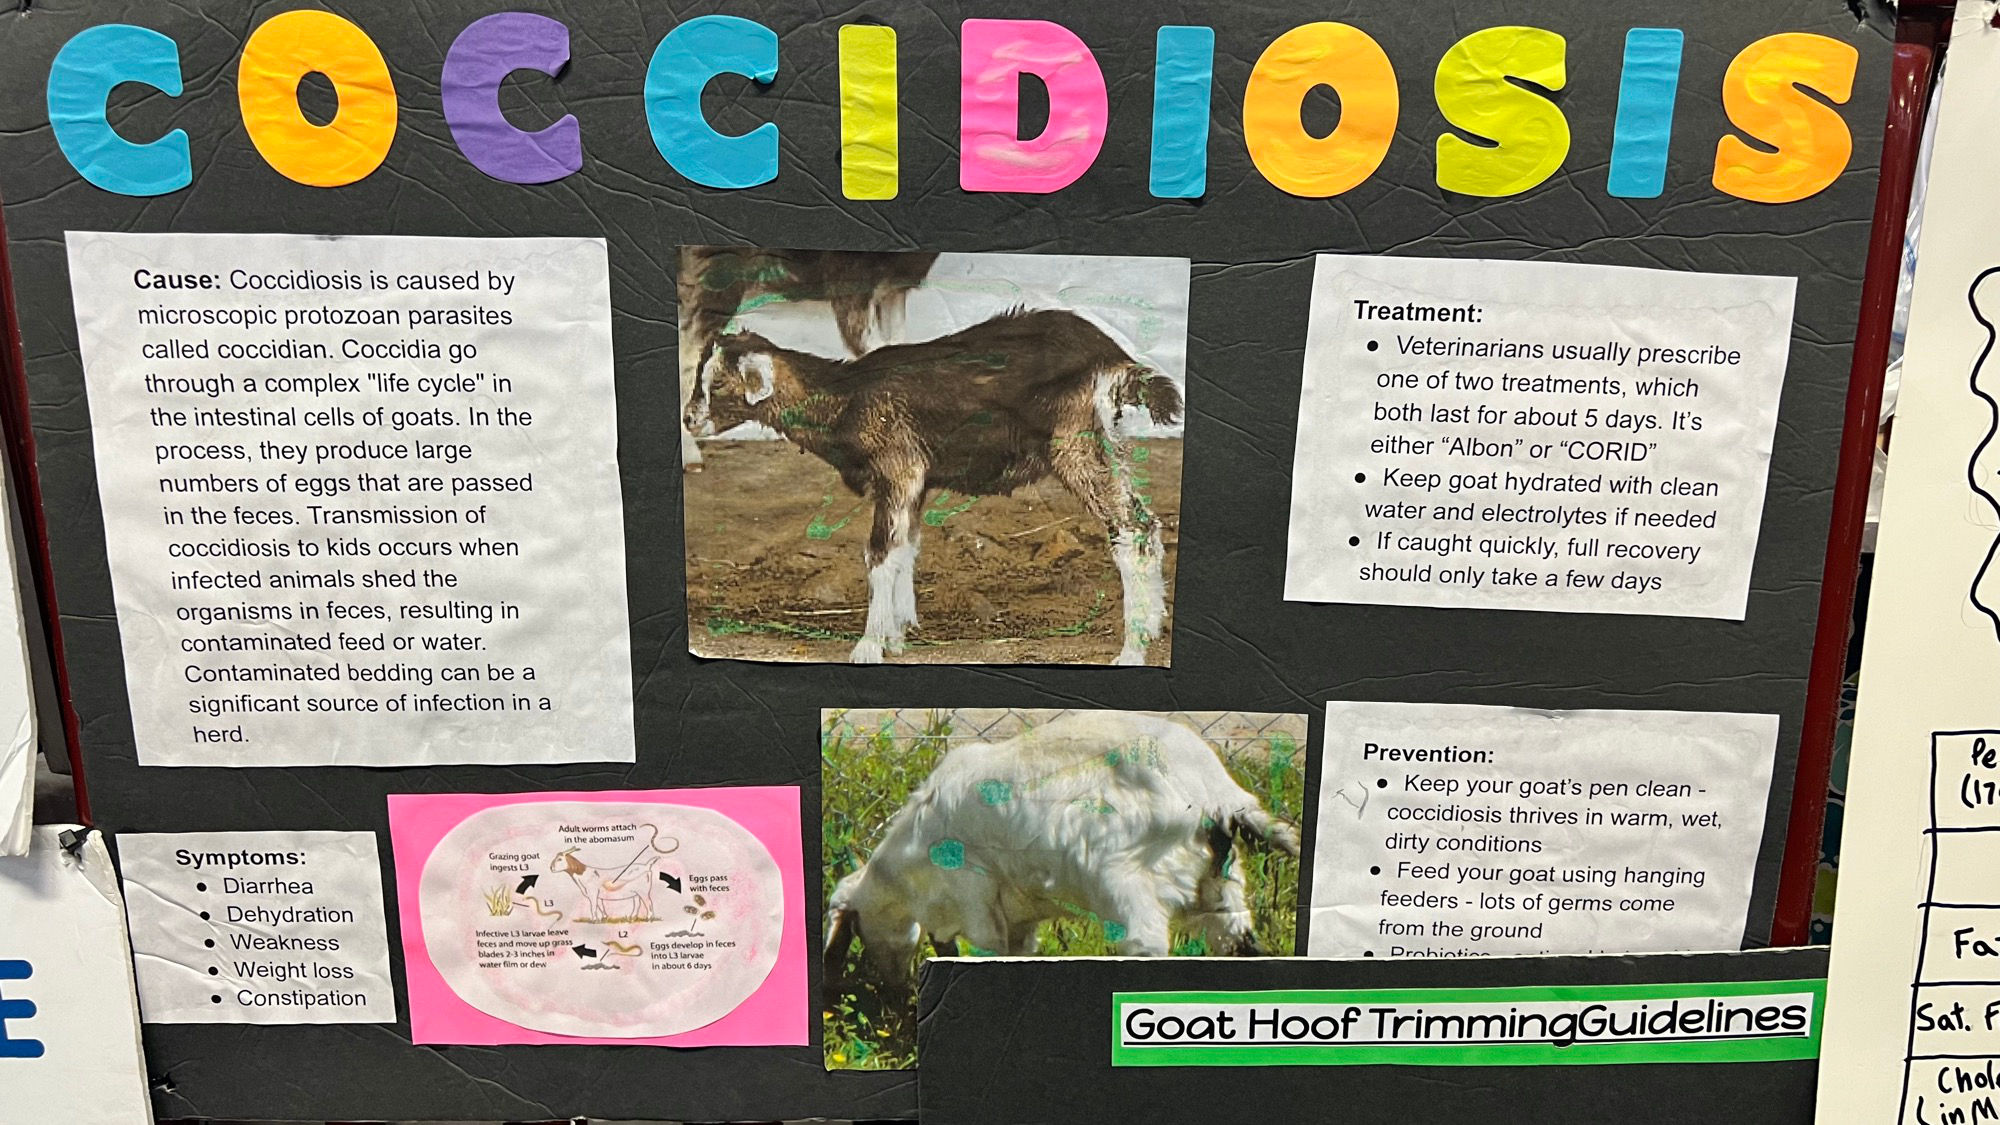 Goats Cocciciosis